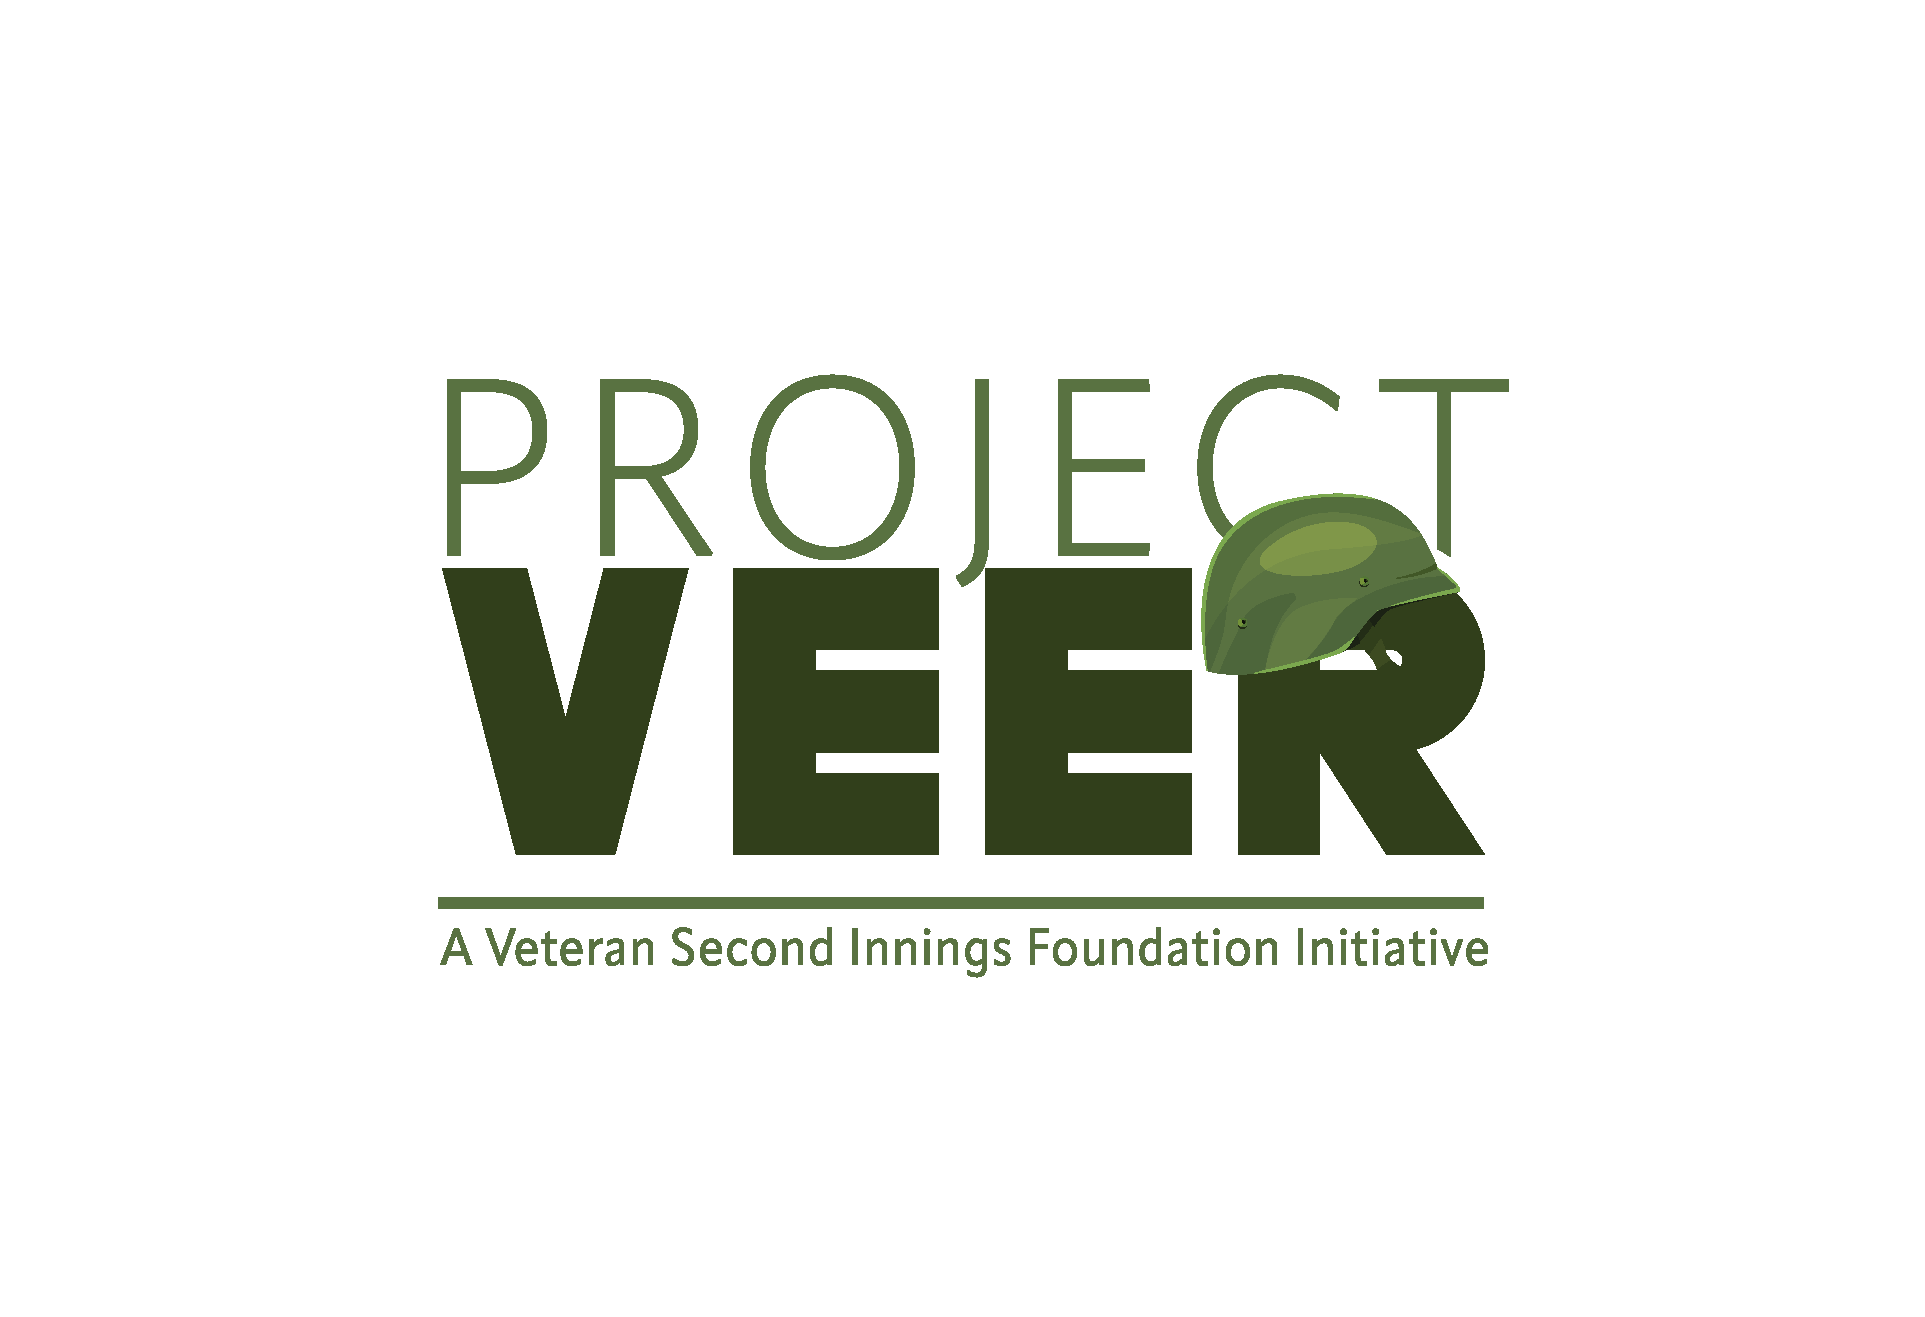 Veteran Second Innings Foundation